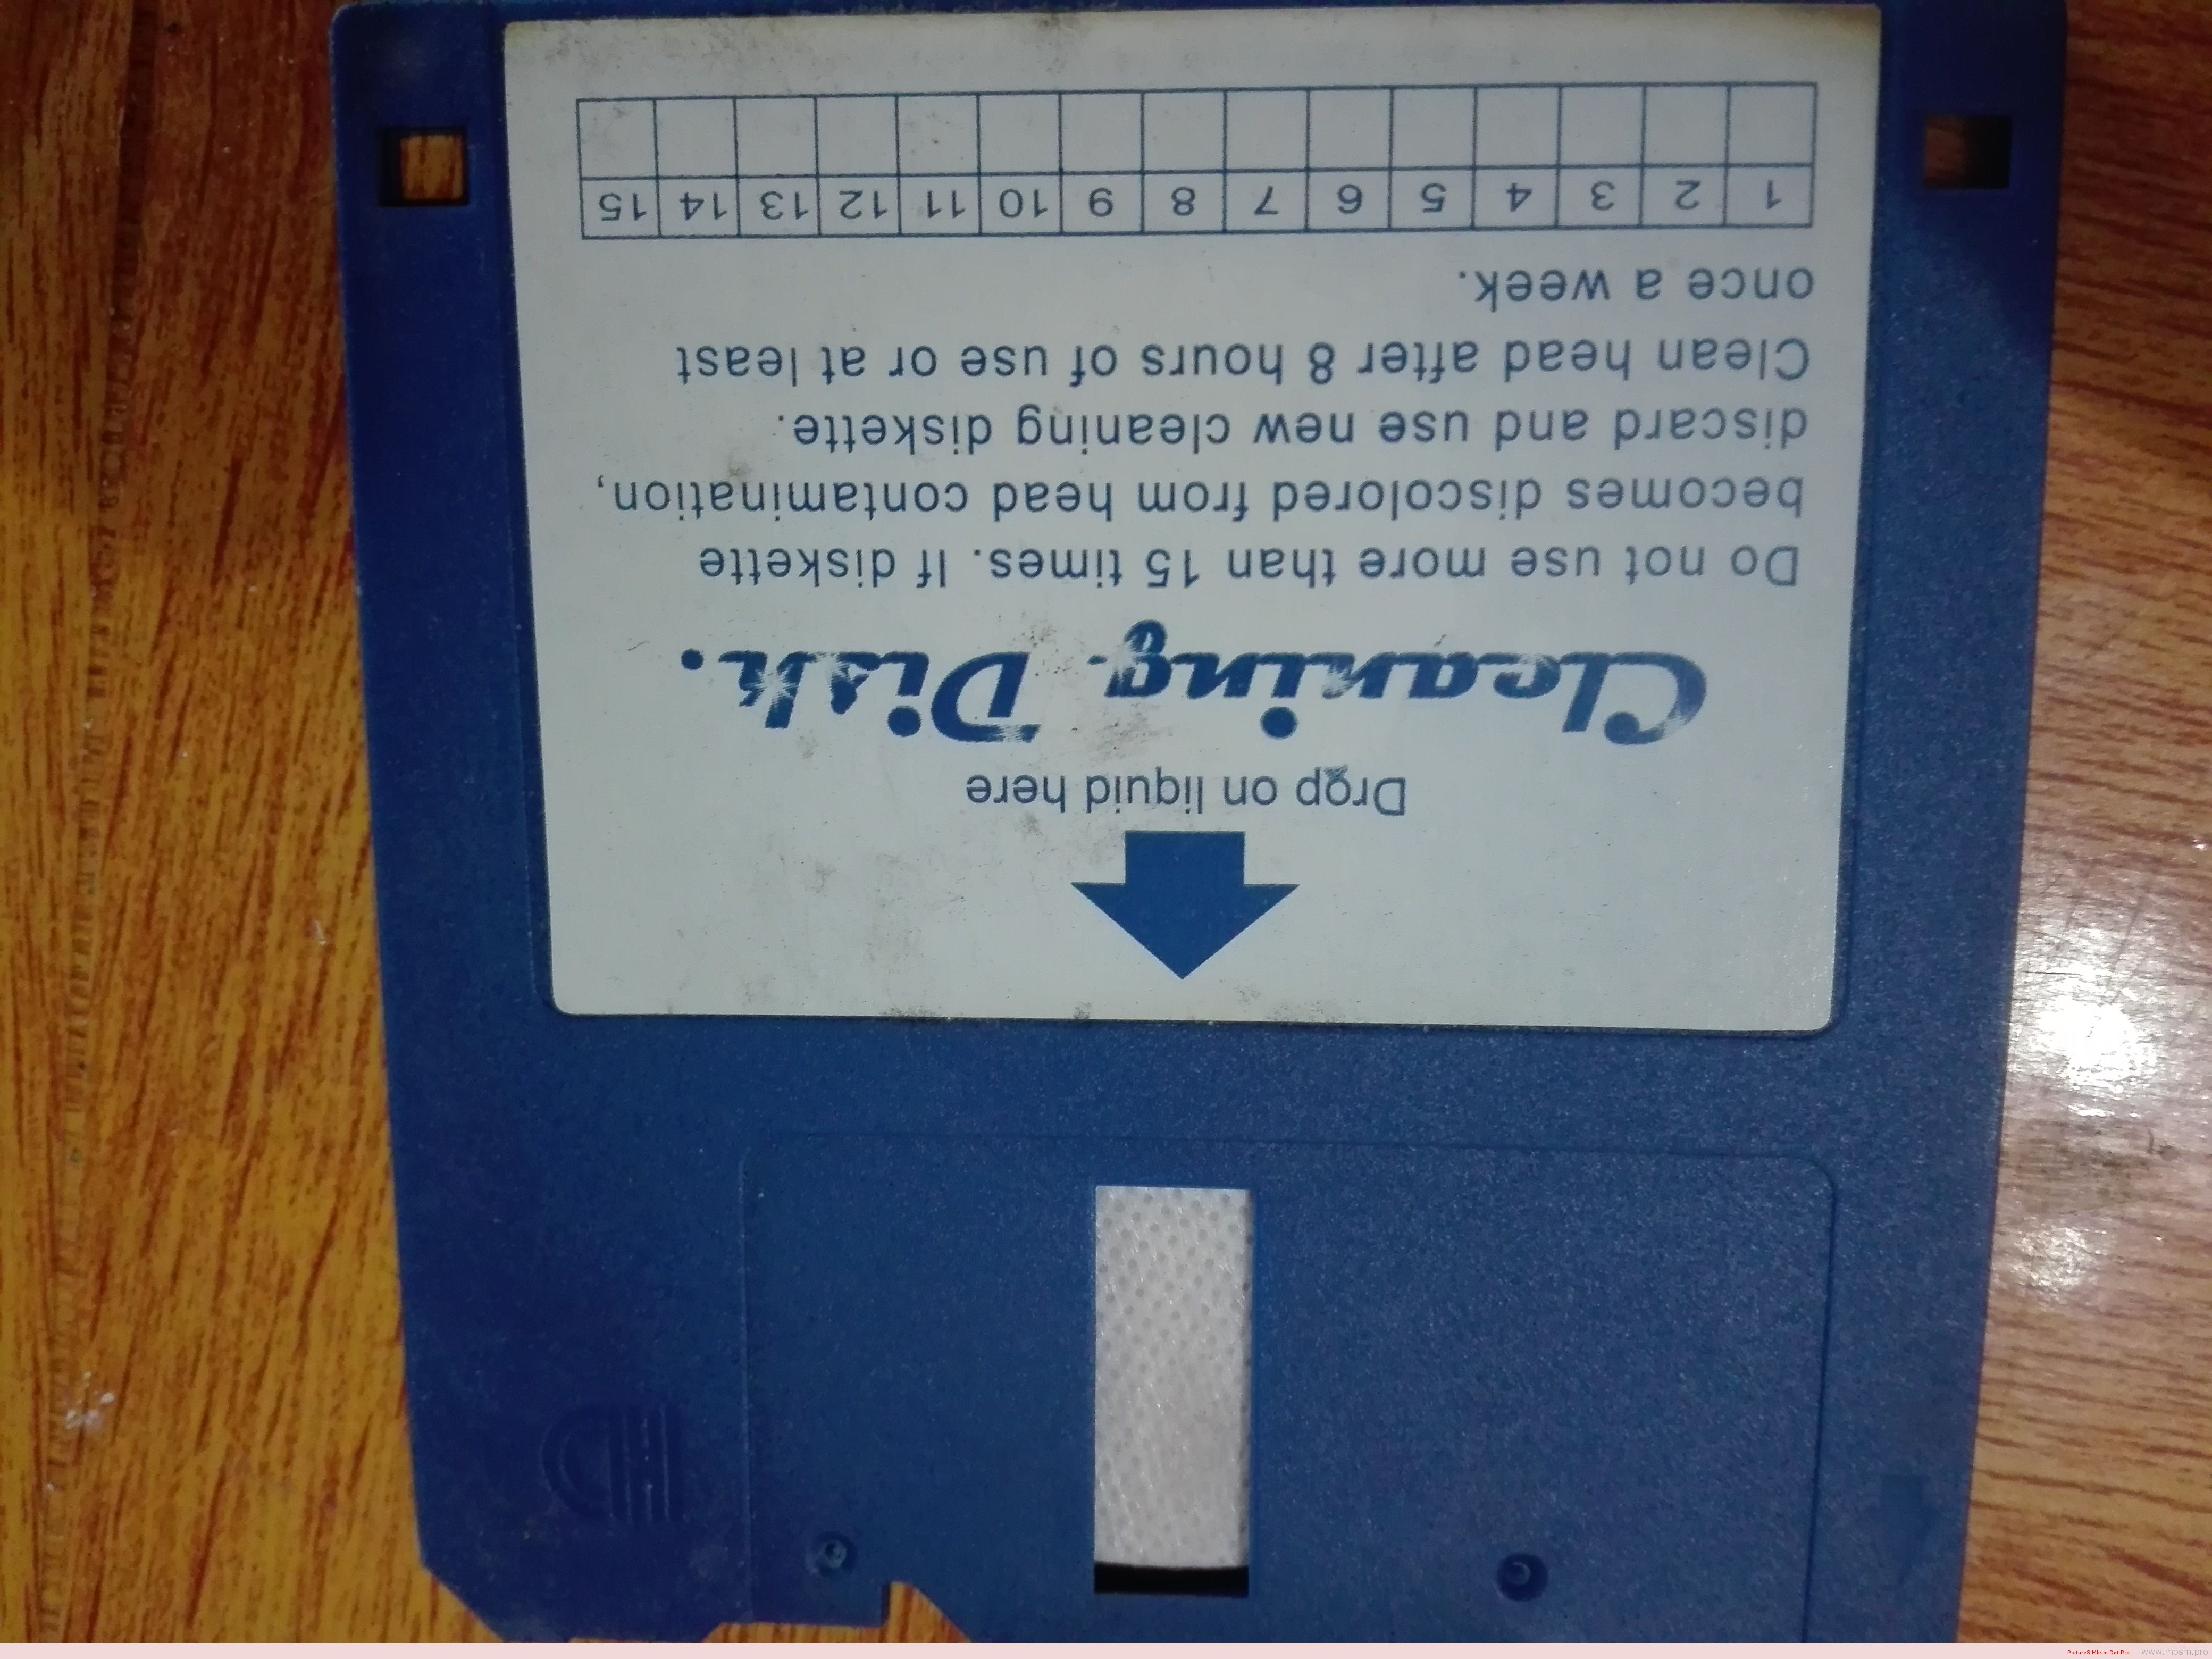 mbsmpro-1998--la-premire-foie-je-touche-une-disquette-pc-et-jinstalle-un-logiciel-mbsm-dot-pro